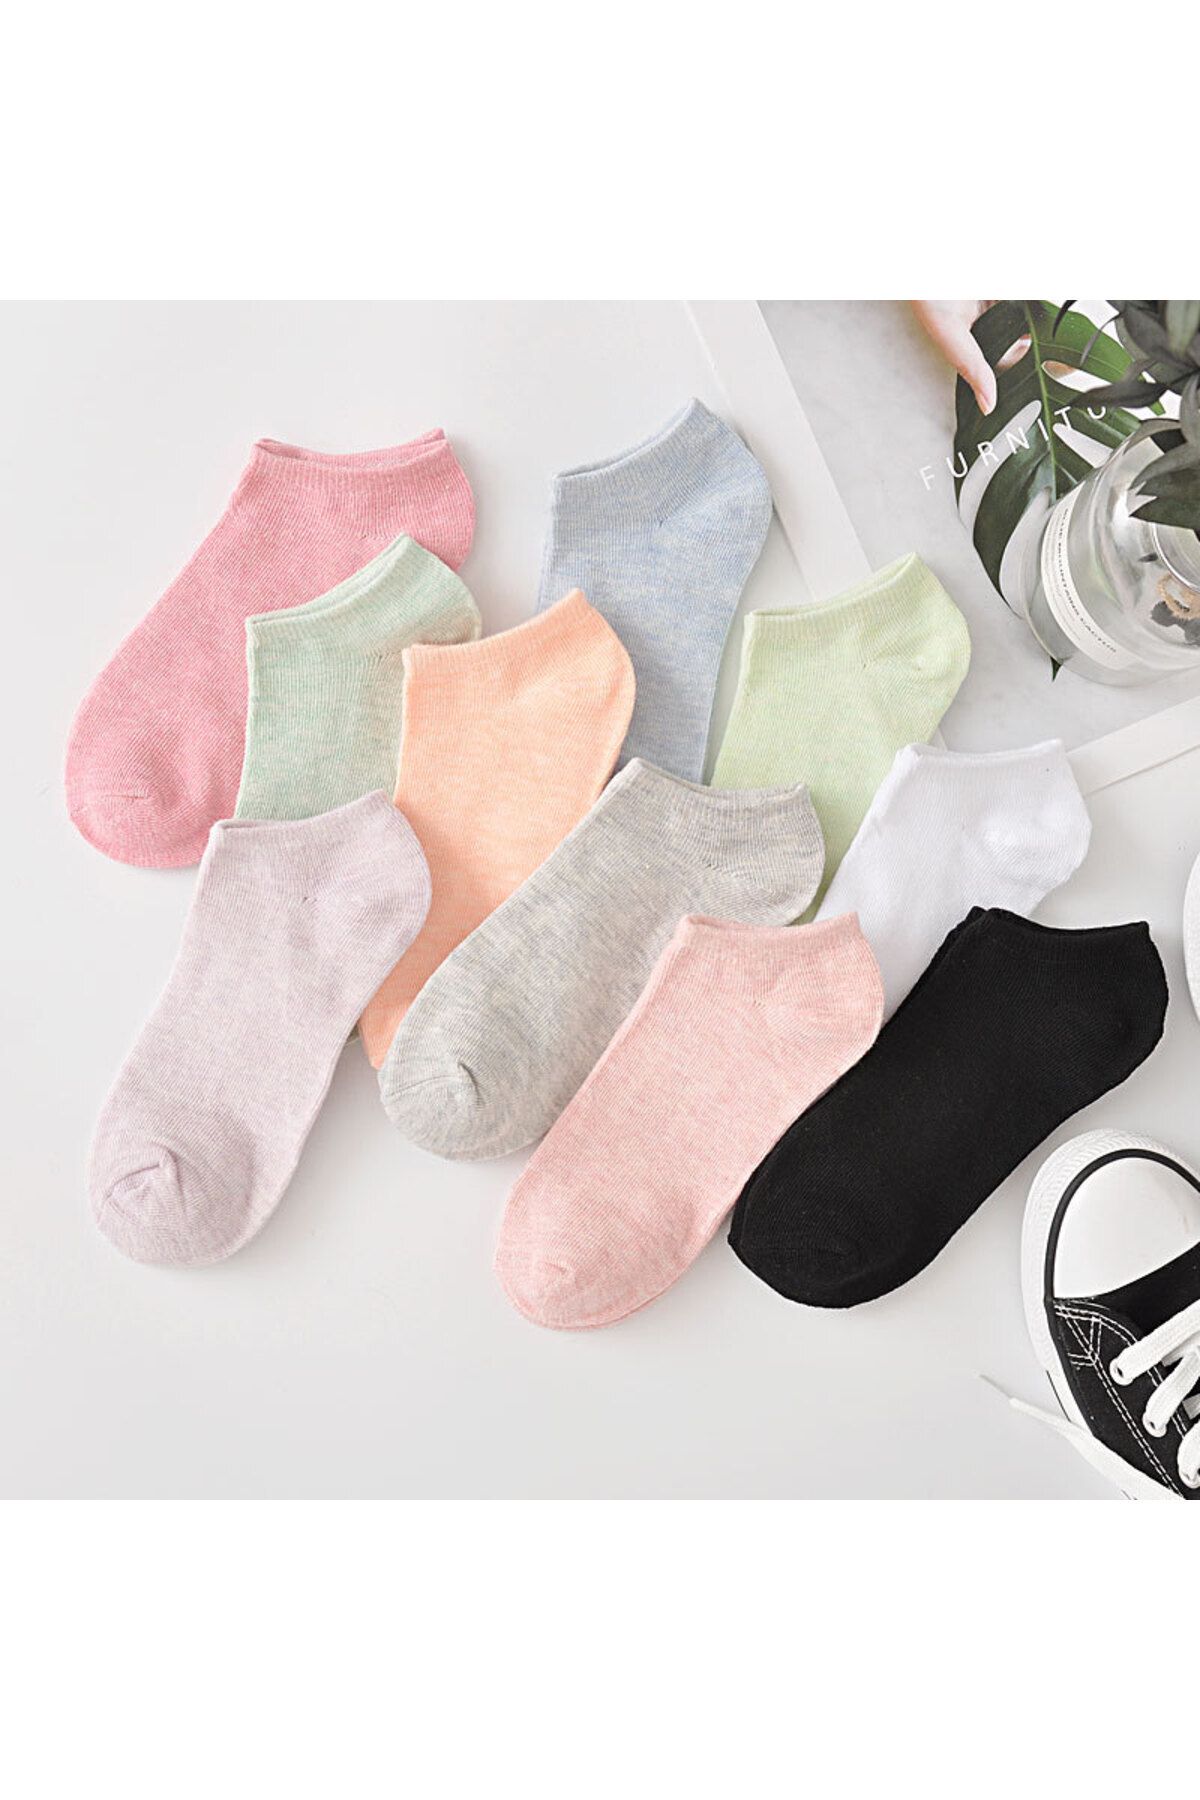 çorapmanya 8 Çift Koton Ekonomik Çok Renkli Renk Kadın Patik Çorap